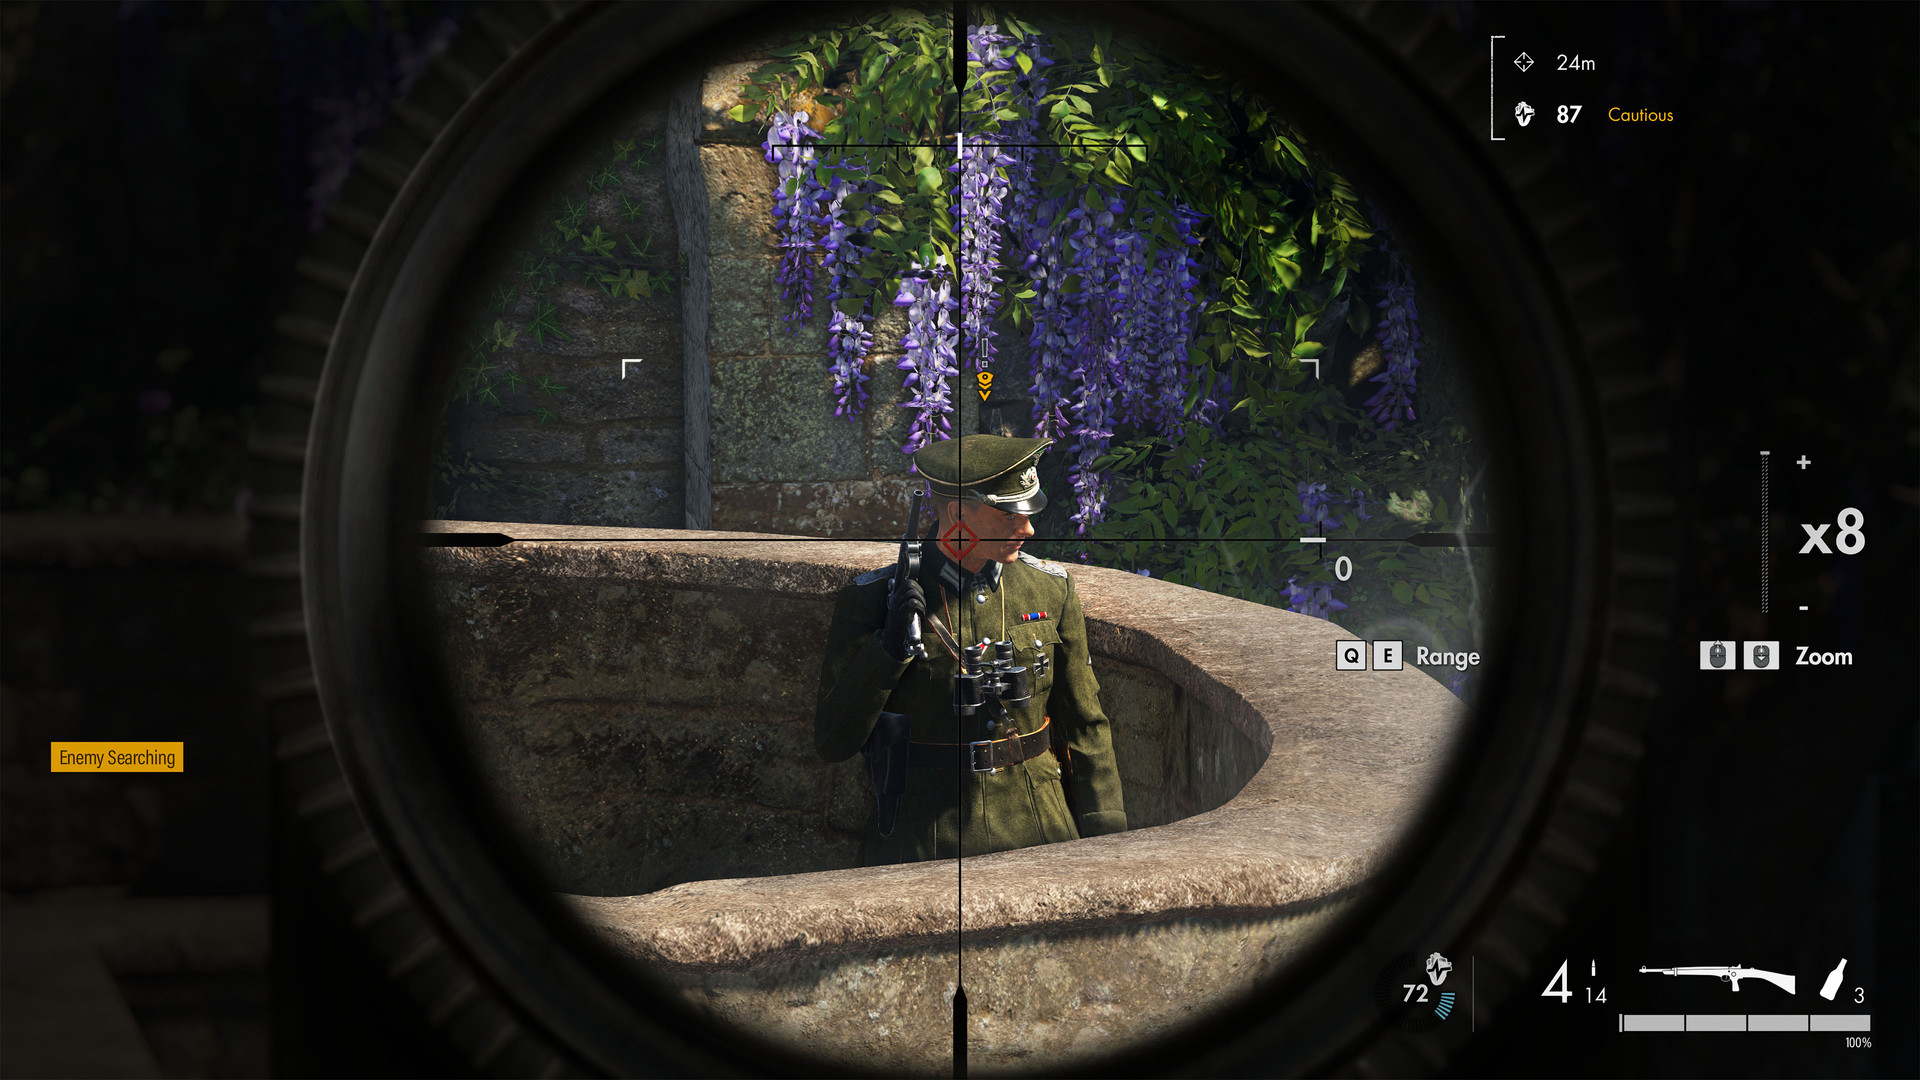 Скриншот-2 из игры Sniper Elite 5 для XBOX